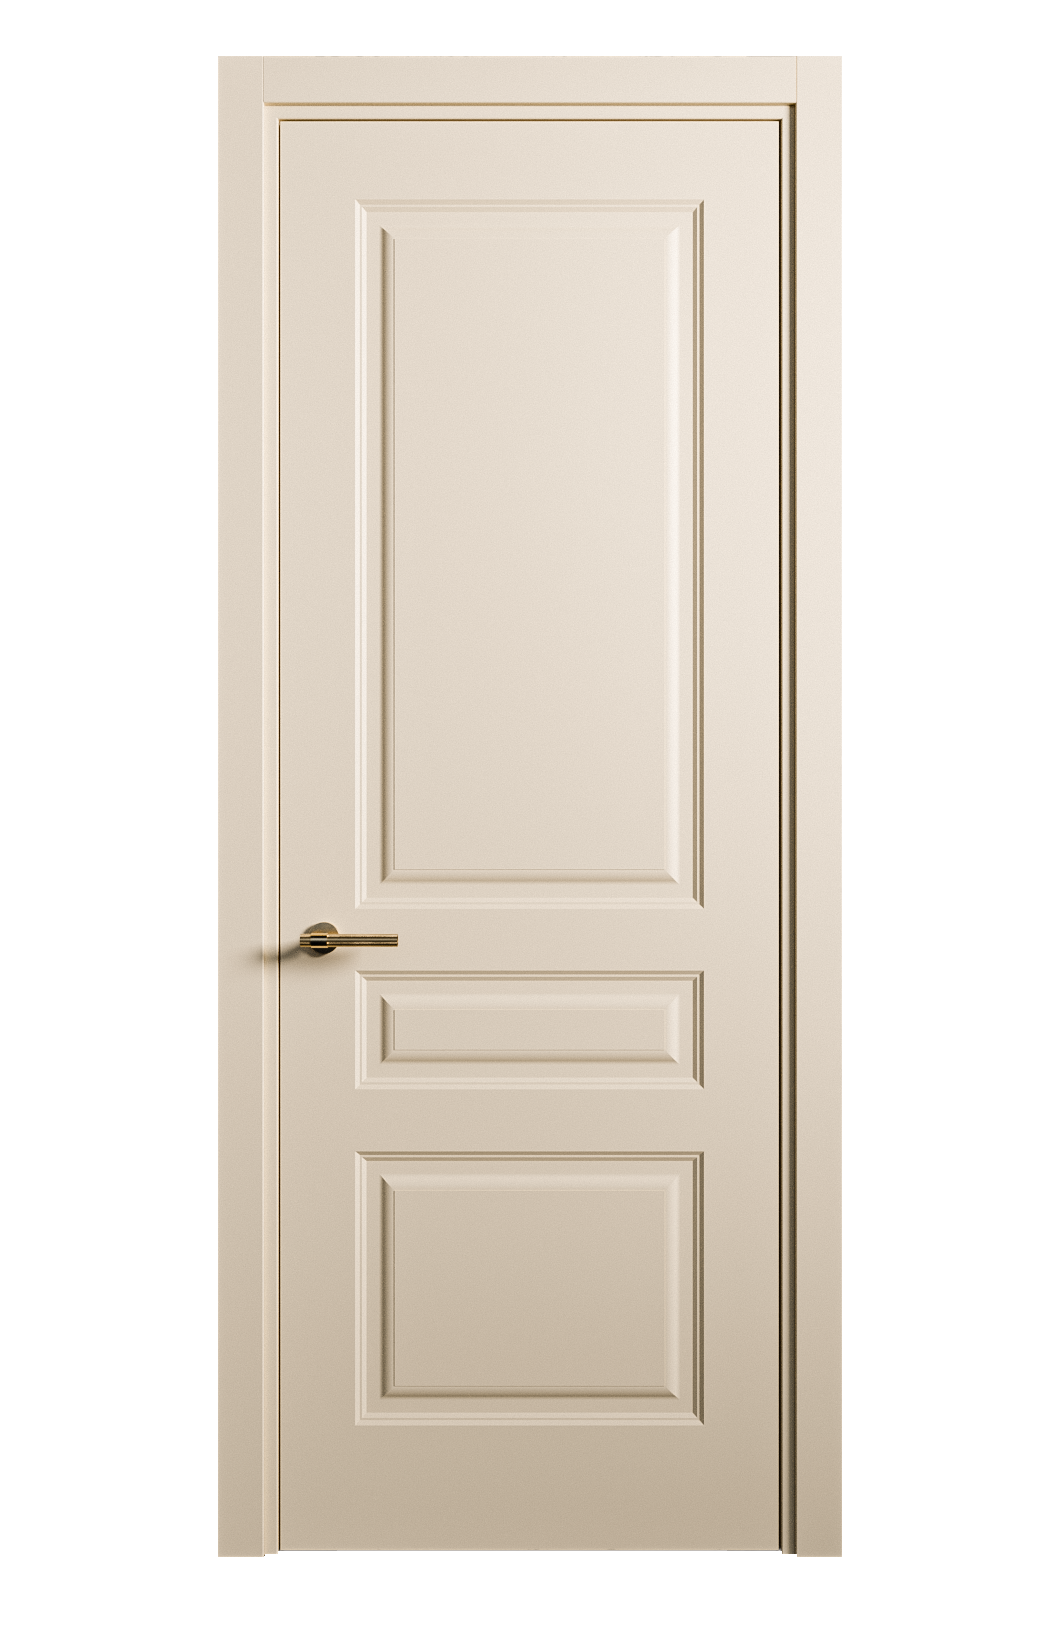 Межкомнатная дверь Вита-2 глухая эмаль ral 1015 26344